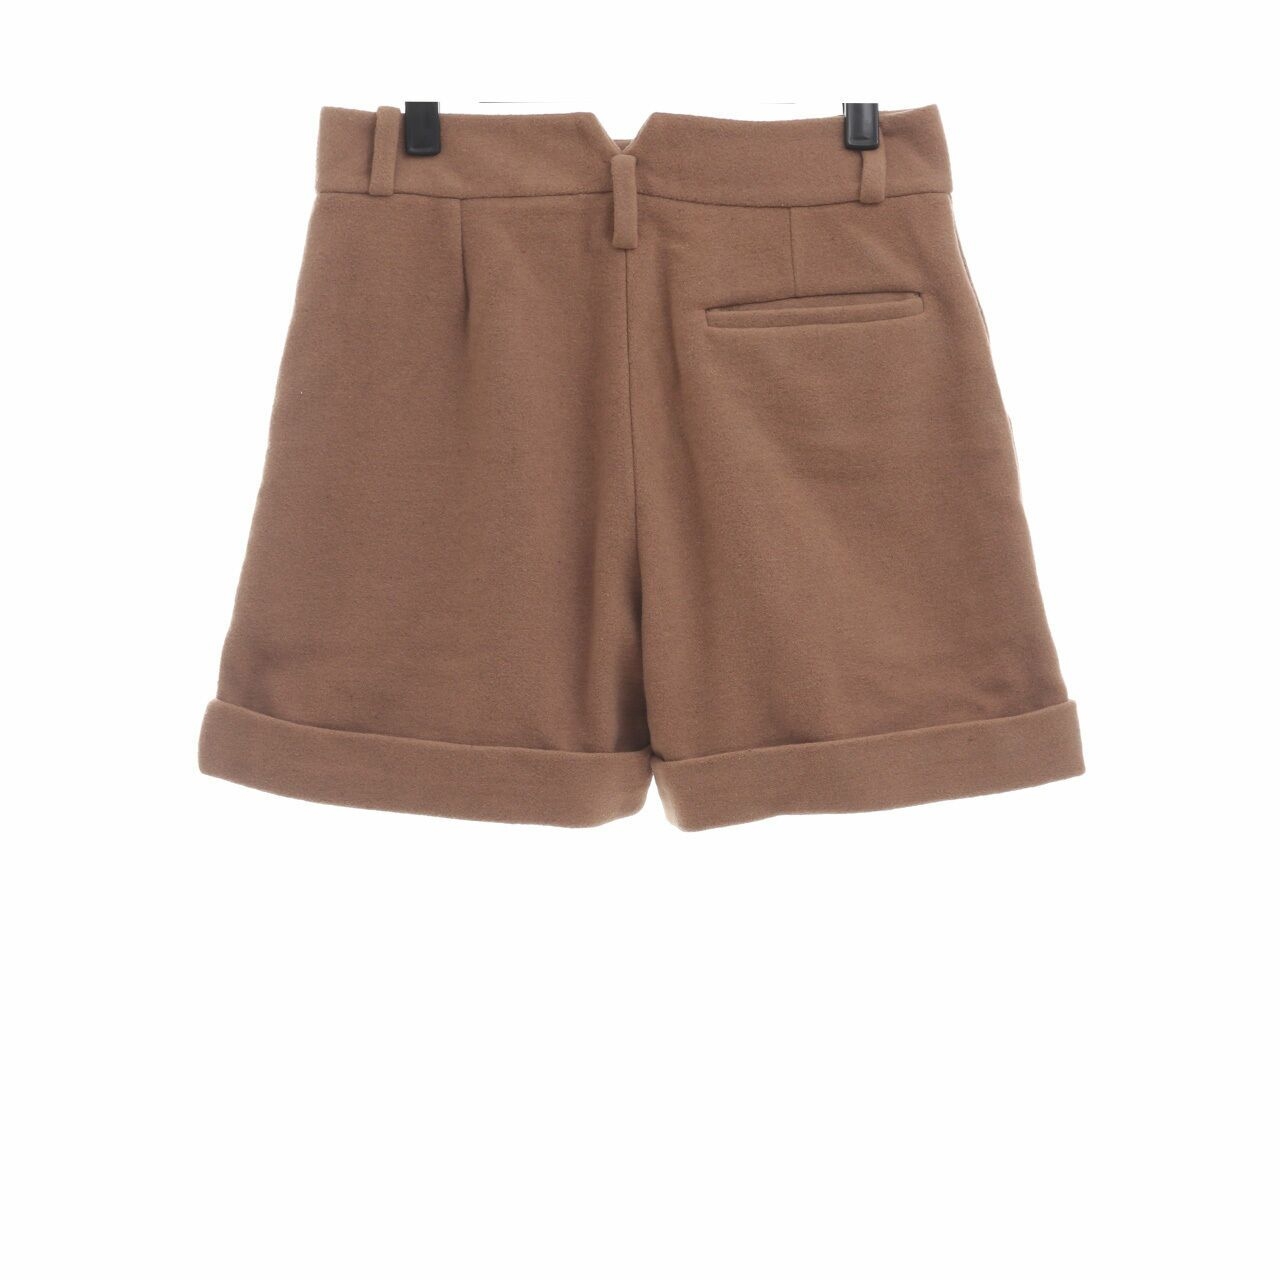 Argyle Oxford Brown Short Pants